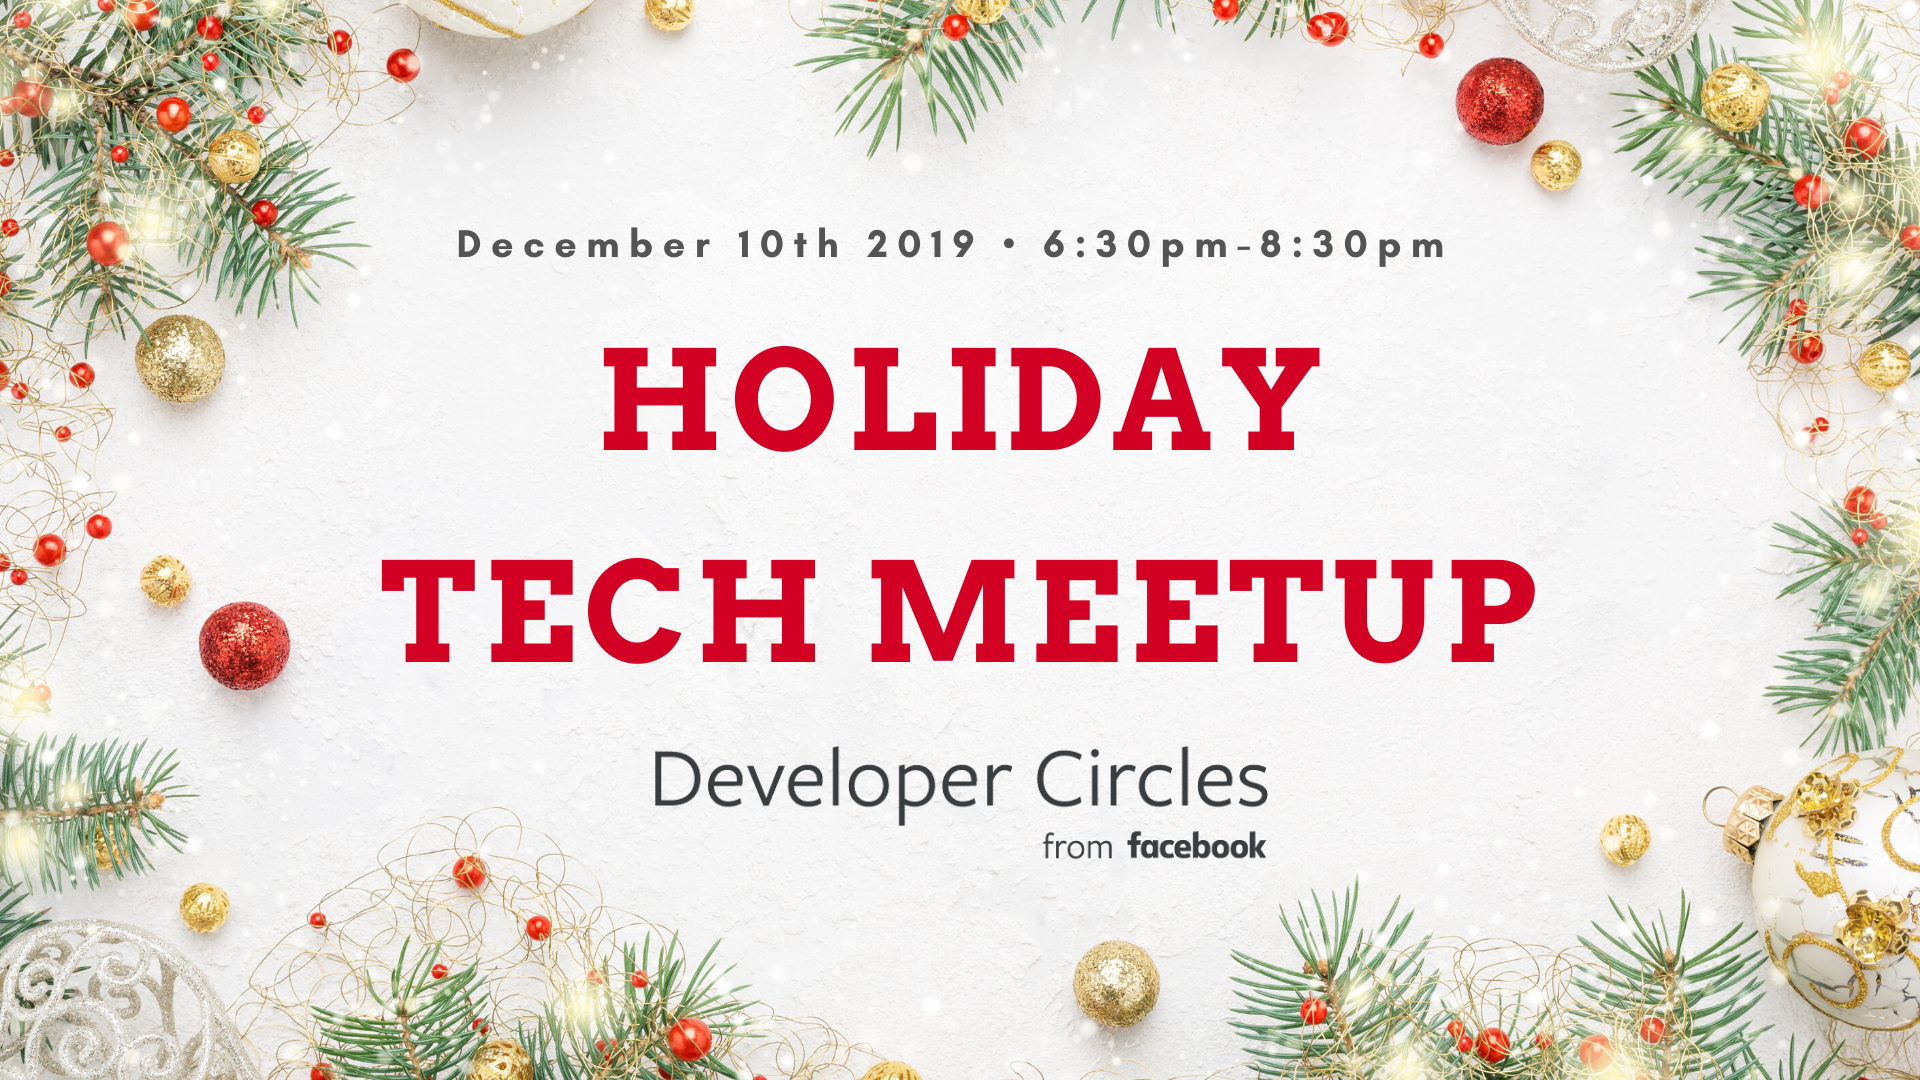 Facebook Developer Circles Holiday Tech Party!